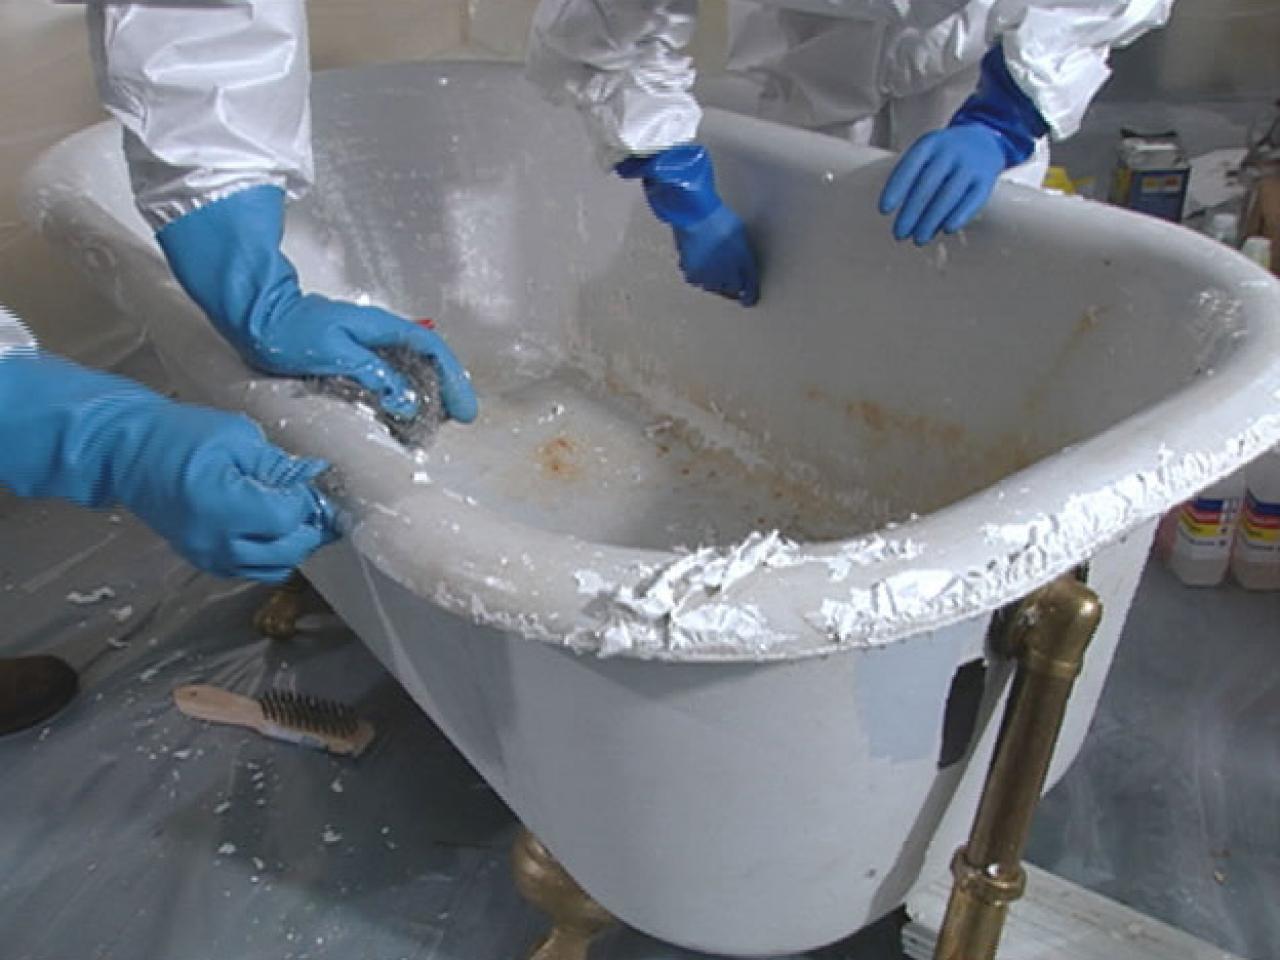 How To Reglaze A Clawfoot Tub Tos, Bath Mat For Refinished Or Reglazed Bathtub